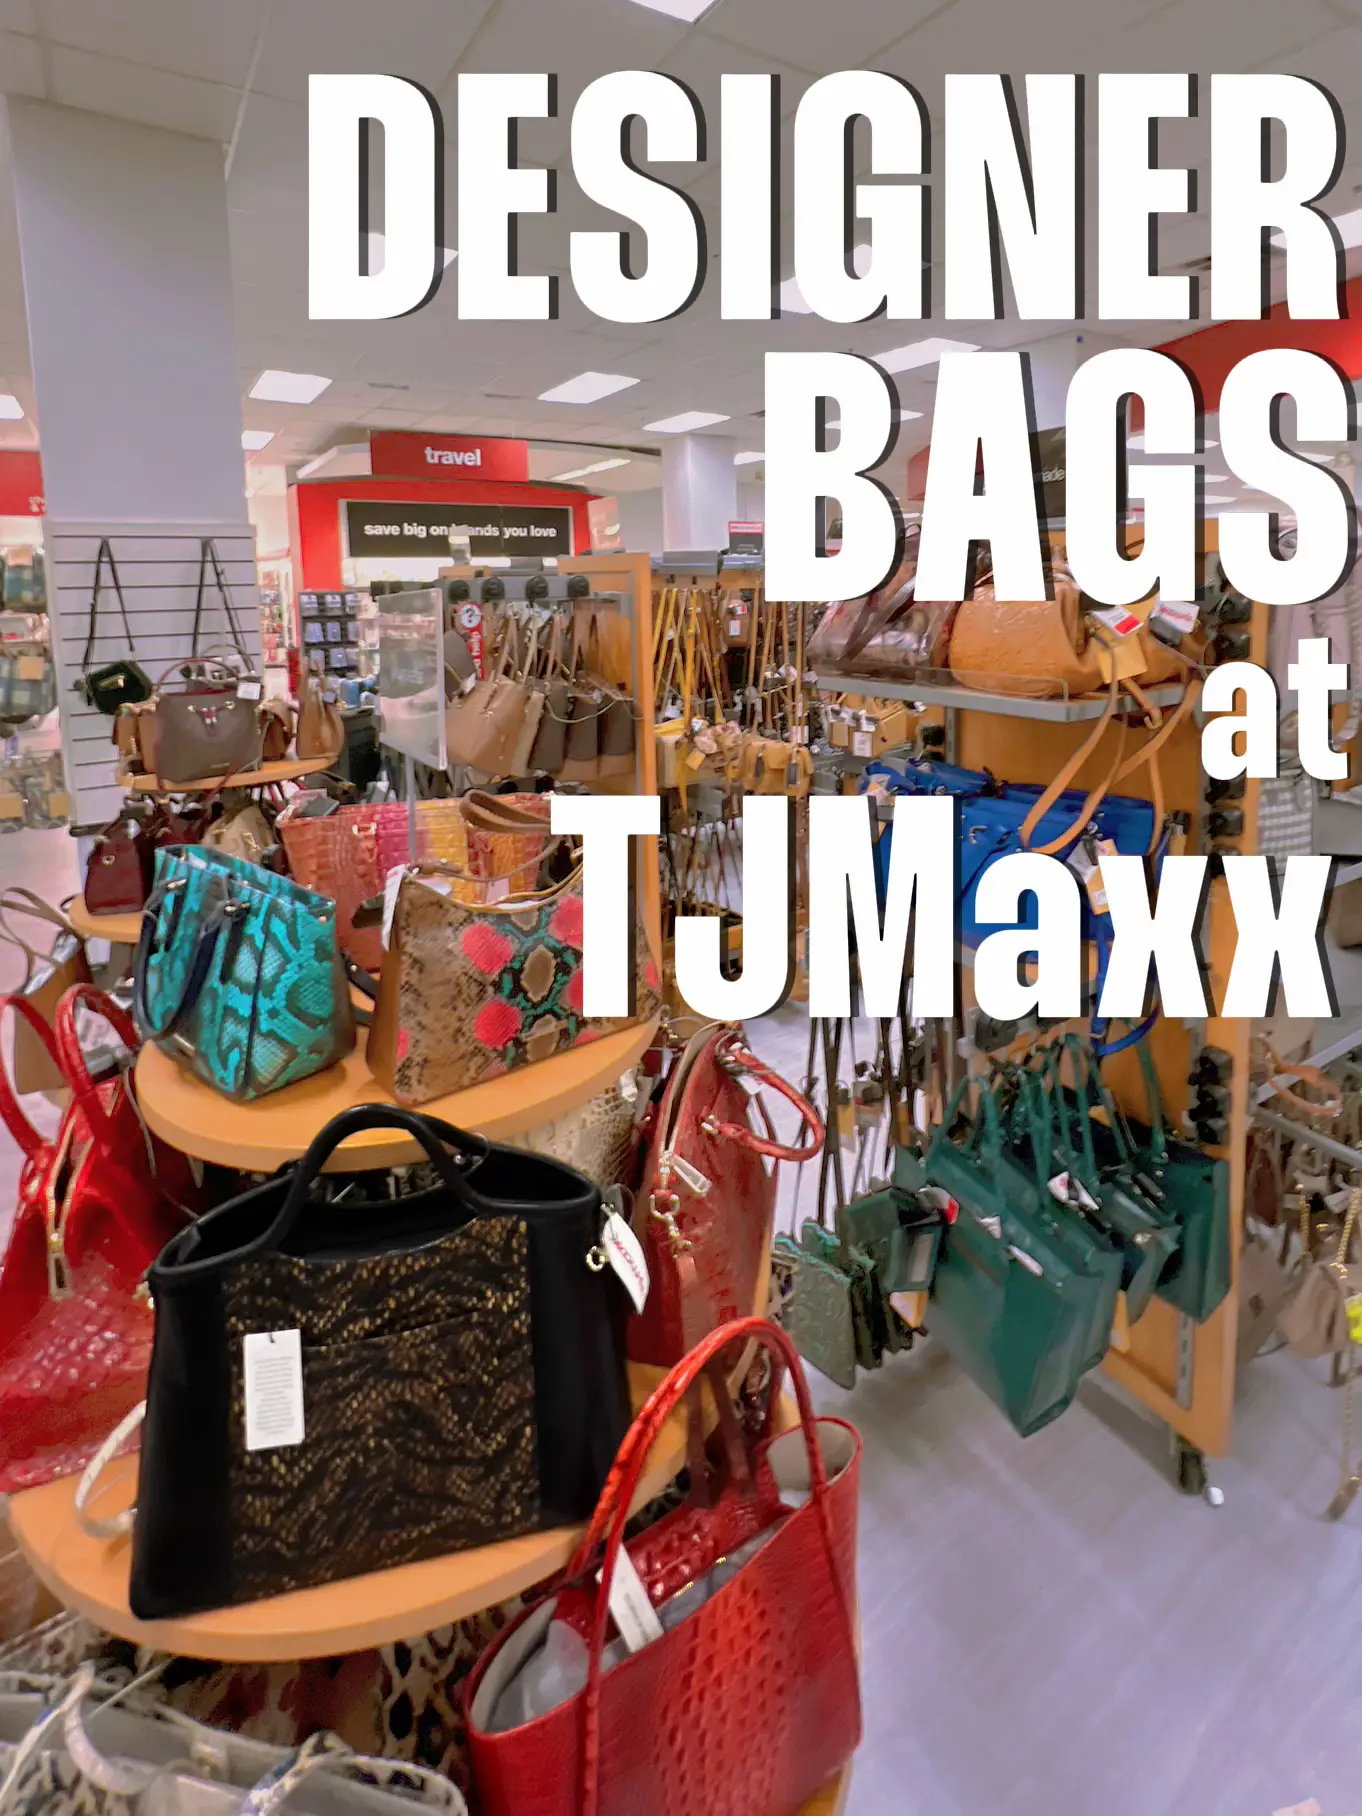 TJ MAXX NEW CLOTHING FINDS! DESIGNER HANDBAGS PURSES SHOES SHOP